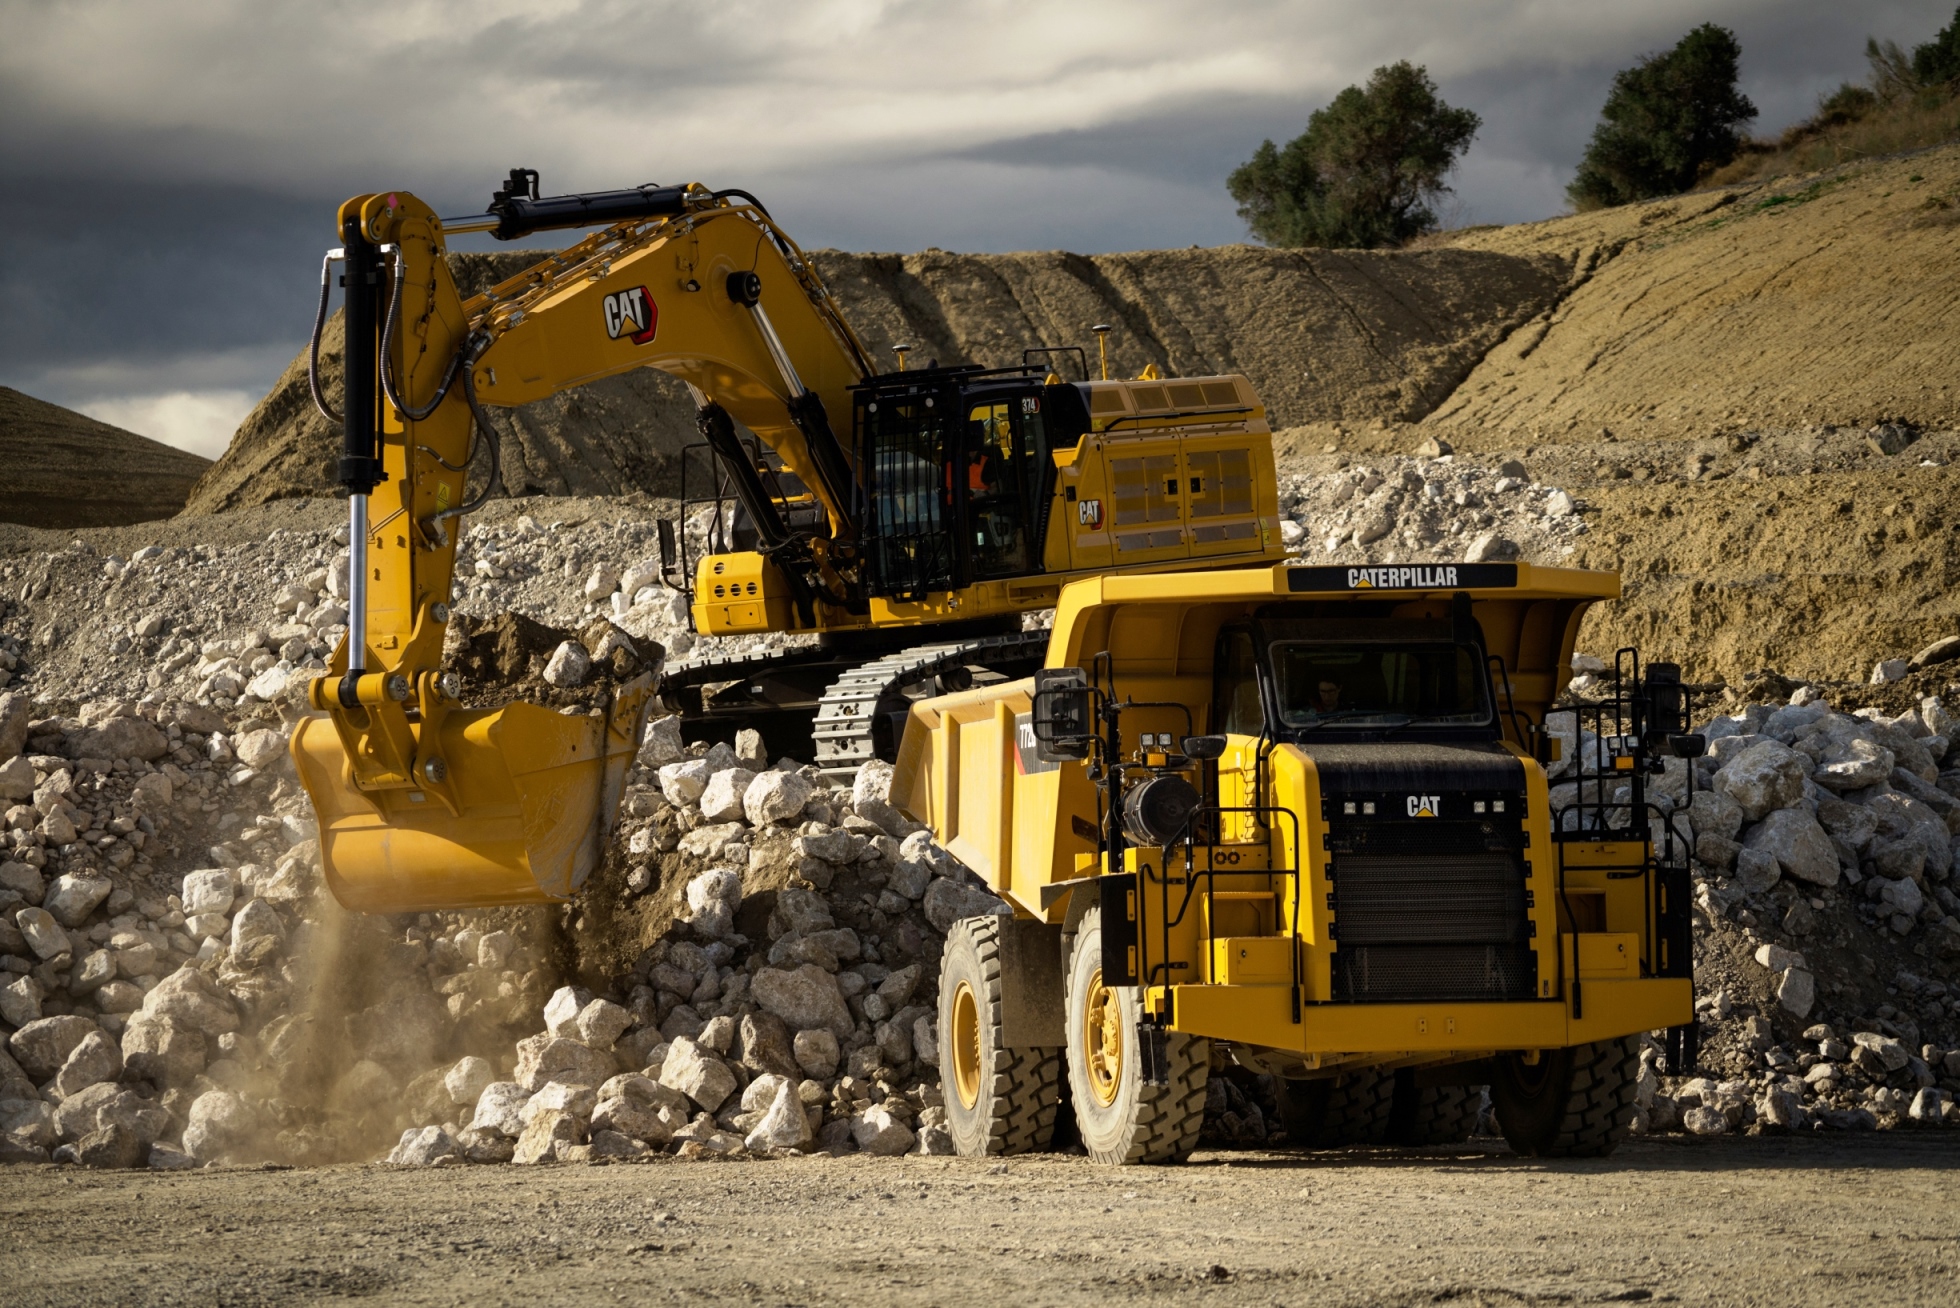 Cat adds more tech to Next Gen large excavators